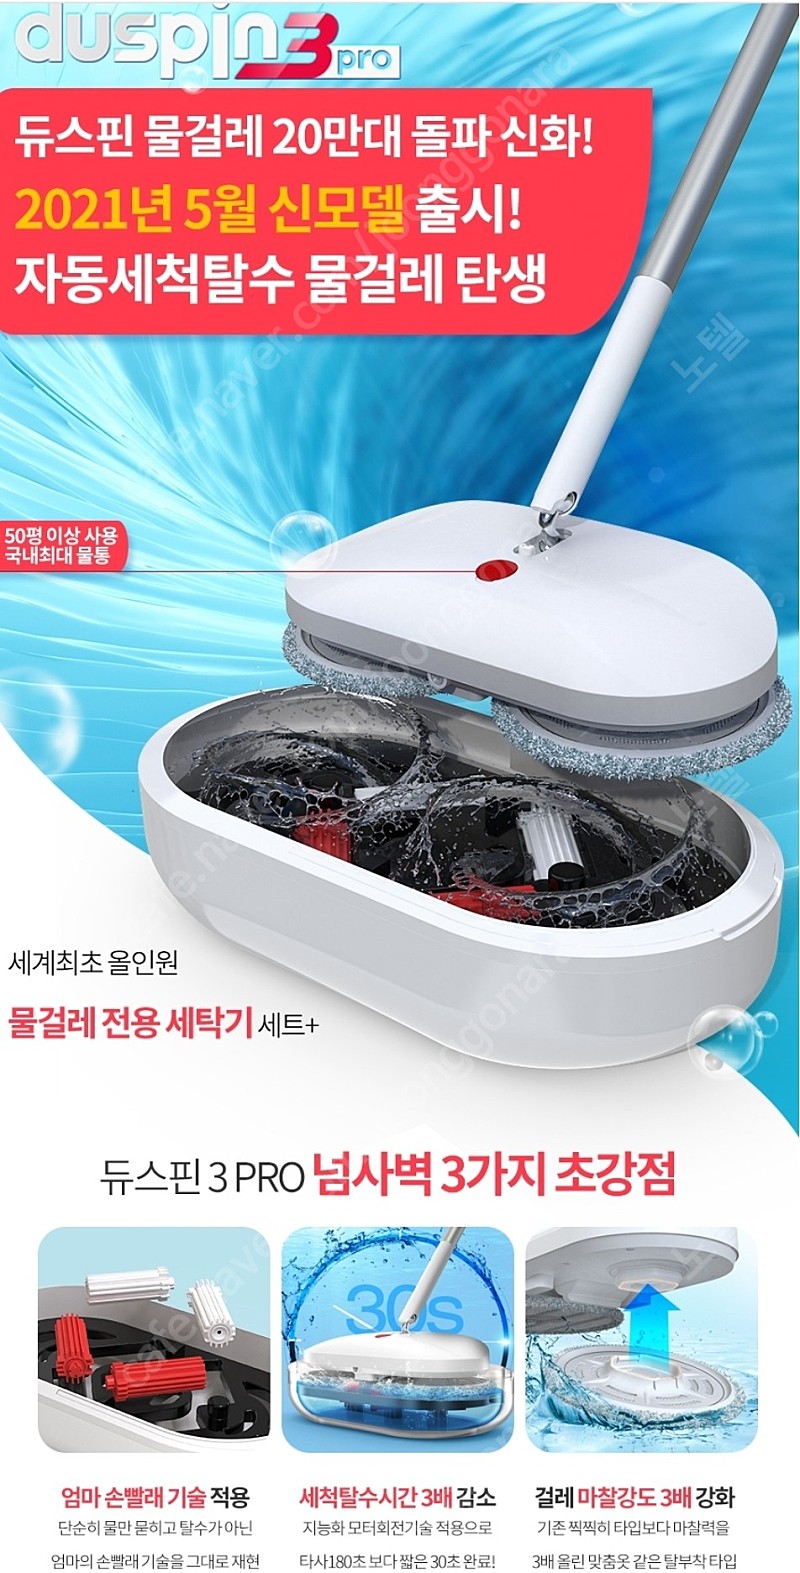 로엘 듀스핀3 pro 무선 물걸레 청소기 새상품 판매합니다.